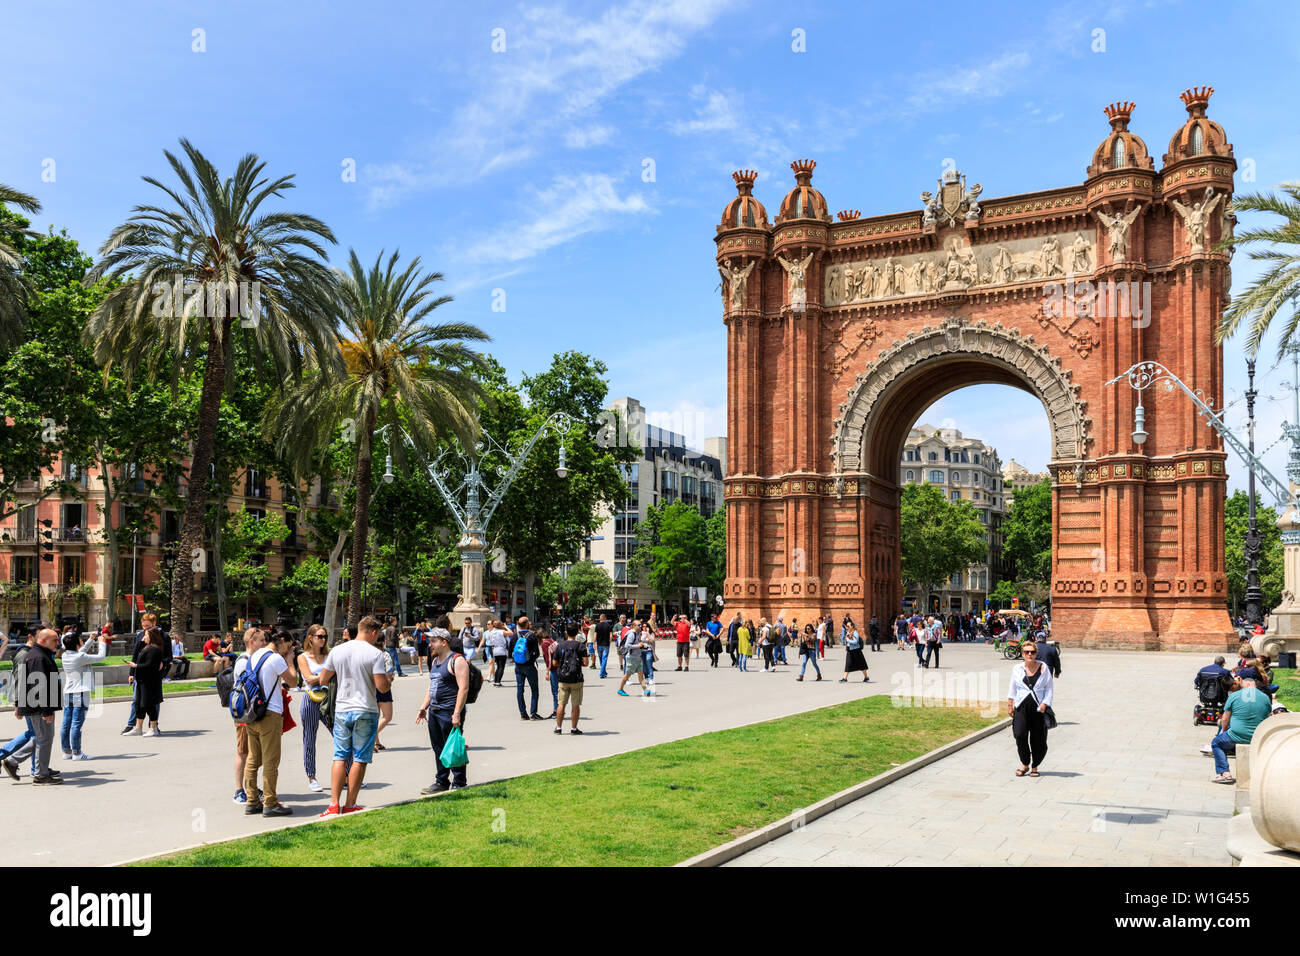 Les gens et les touristes à l'Arc de Triomf ou Arco de Triunfo Monument arch et le boulevard dans le soleil d'été, Barcelone, Espagne Banque D'Images